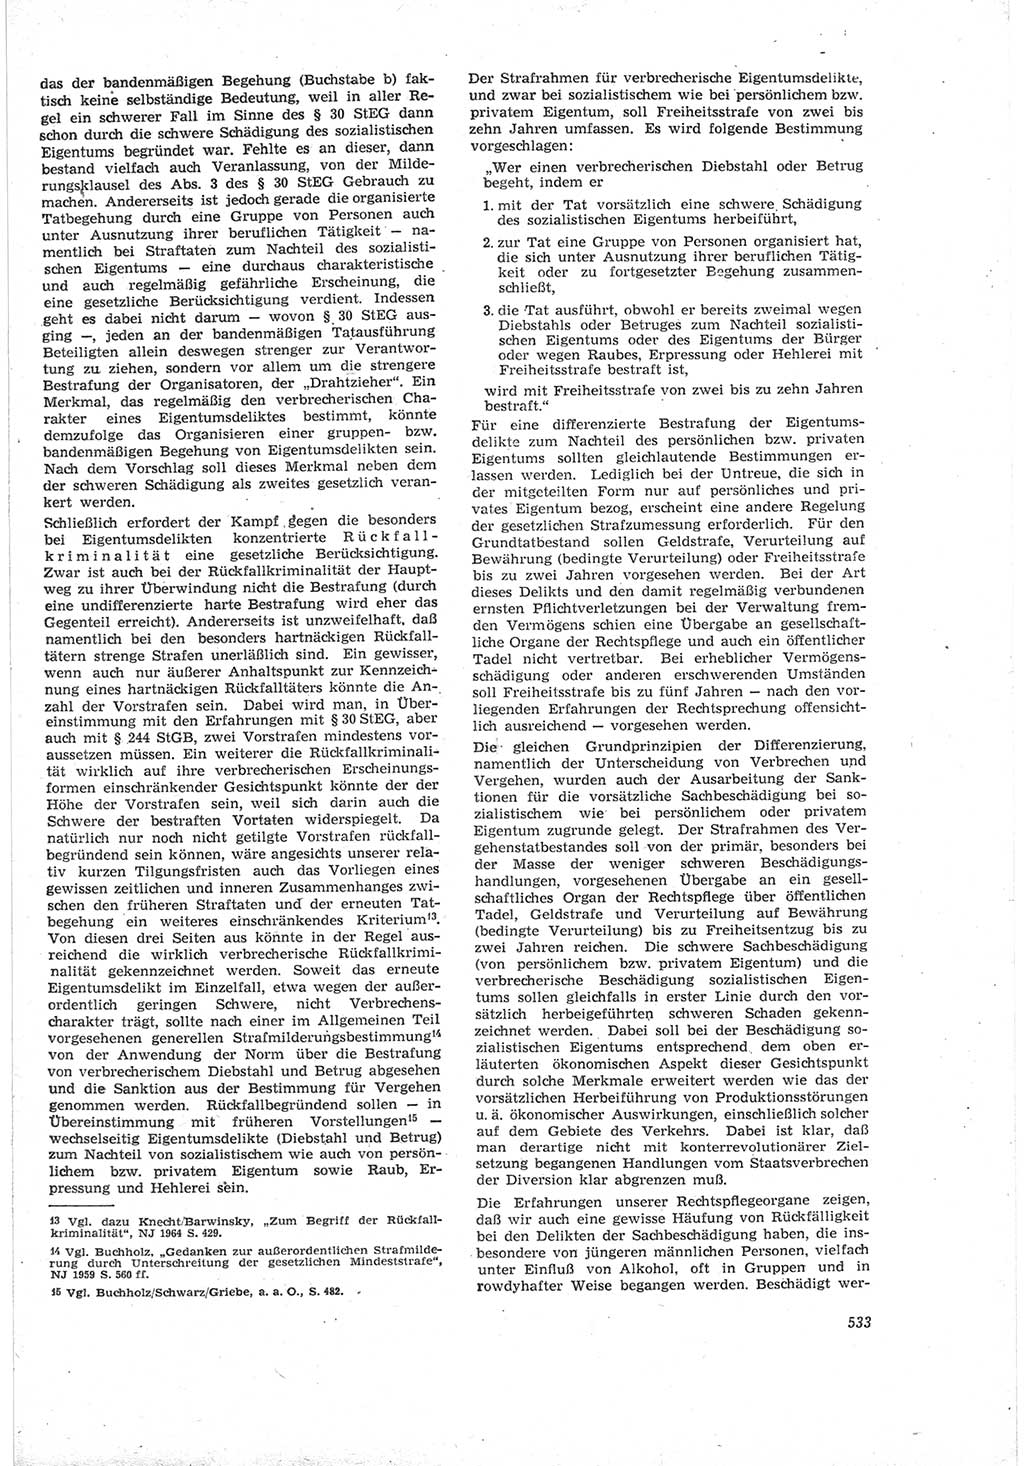 Neue Justiz (NJ), Zeitschrift für Recht und Rechtswissenschaft [Deutsche Demokratische Republik (DDR)], 18. Jahrgang 1964, Seite 533 (NJ DDR 1964, S. 533)